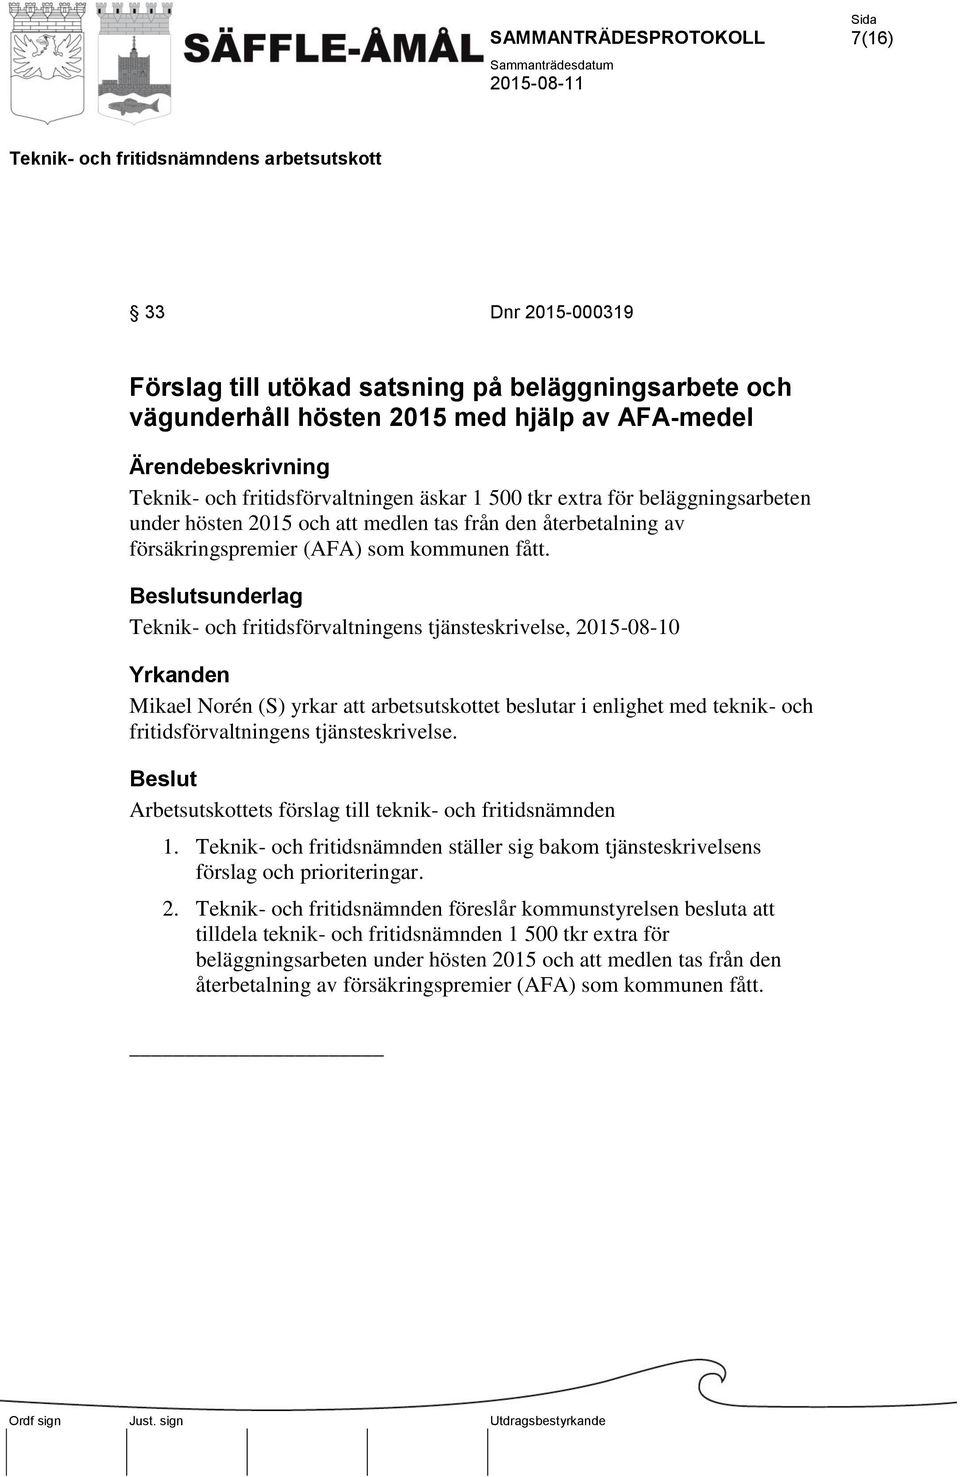 Teknik- och fritidsförvaltningens tjänsteskrivelse, 2015-08-10 Mikael Norén (S) yrkar att arbetsutskottet beslutar i enlighet med teknik- och fritidsförvaltningens tjänsteskrivelse.